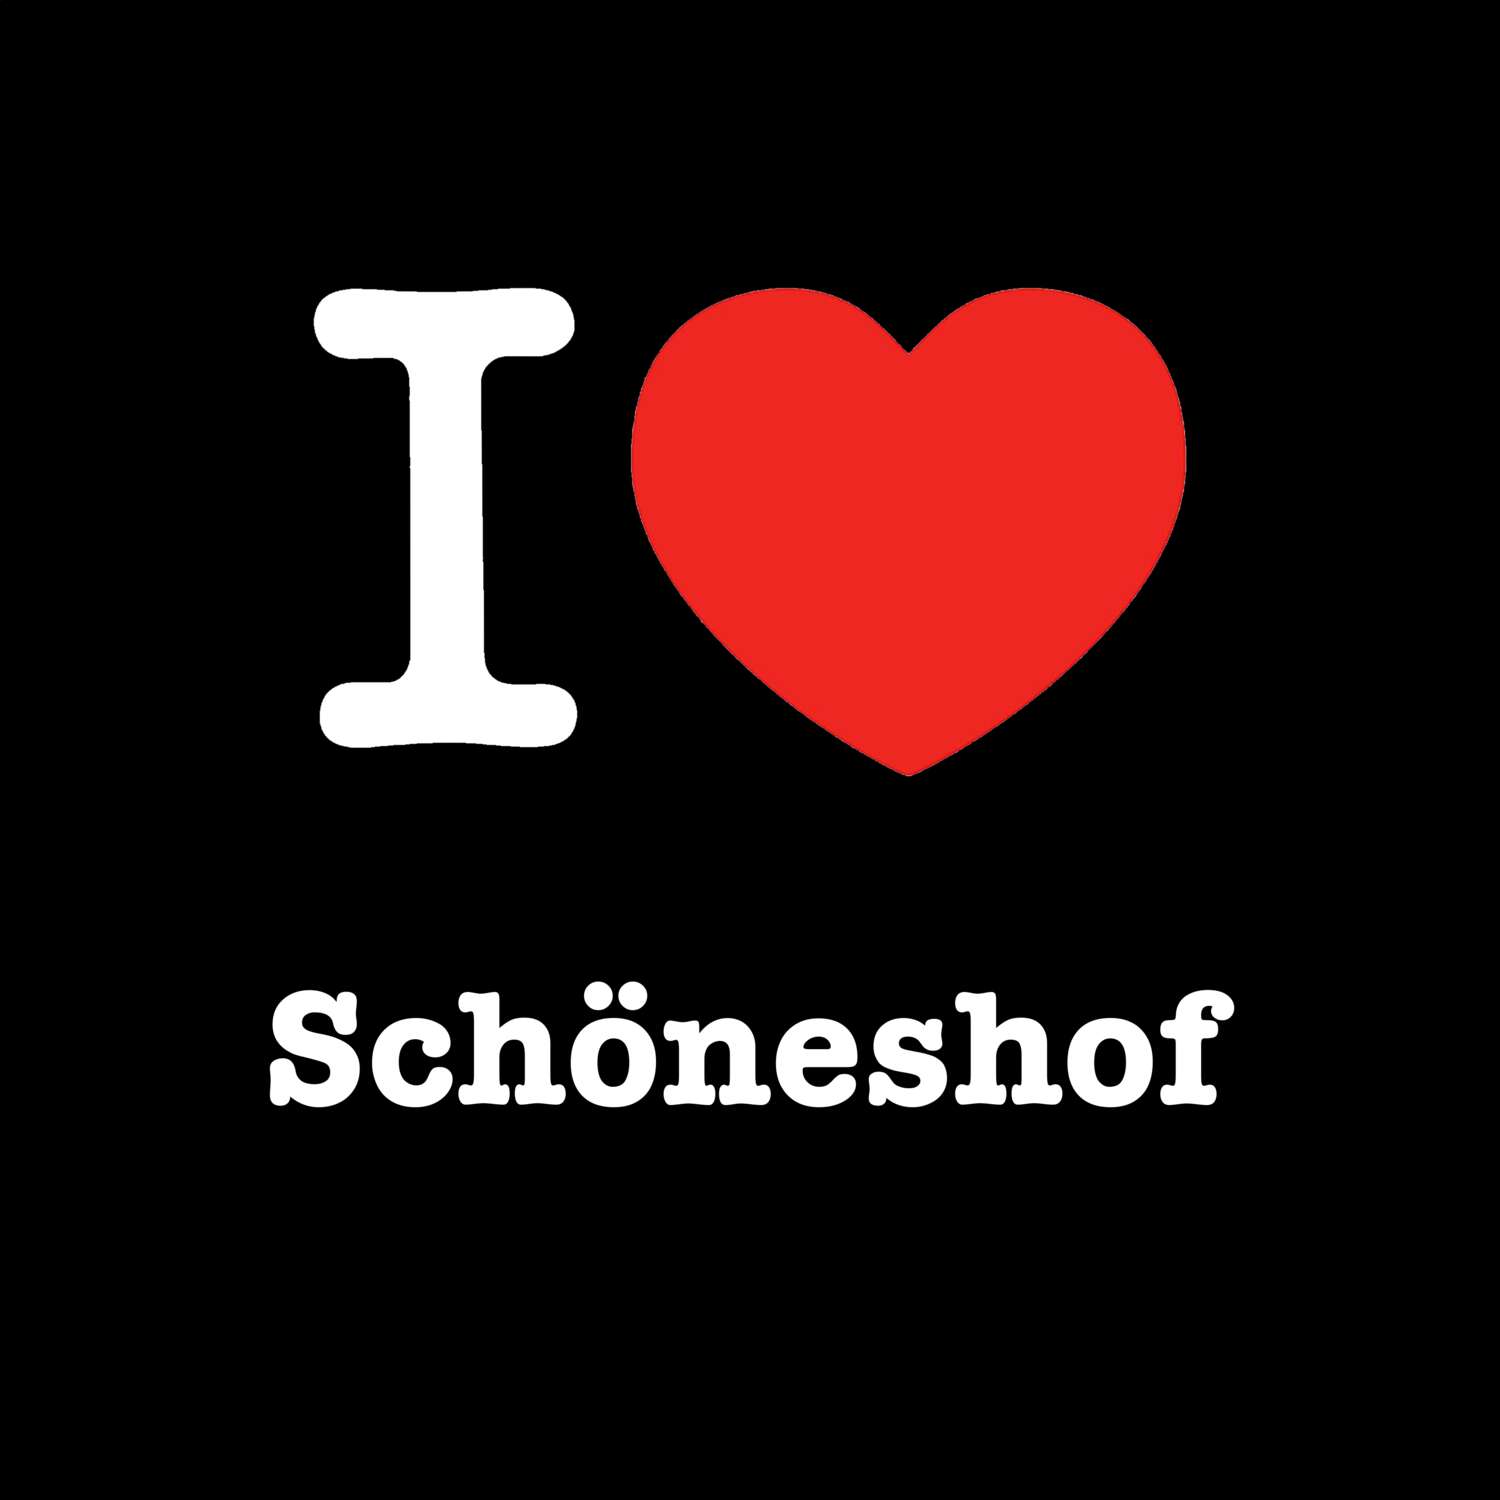 Schöneshof T-Shirt »I love«